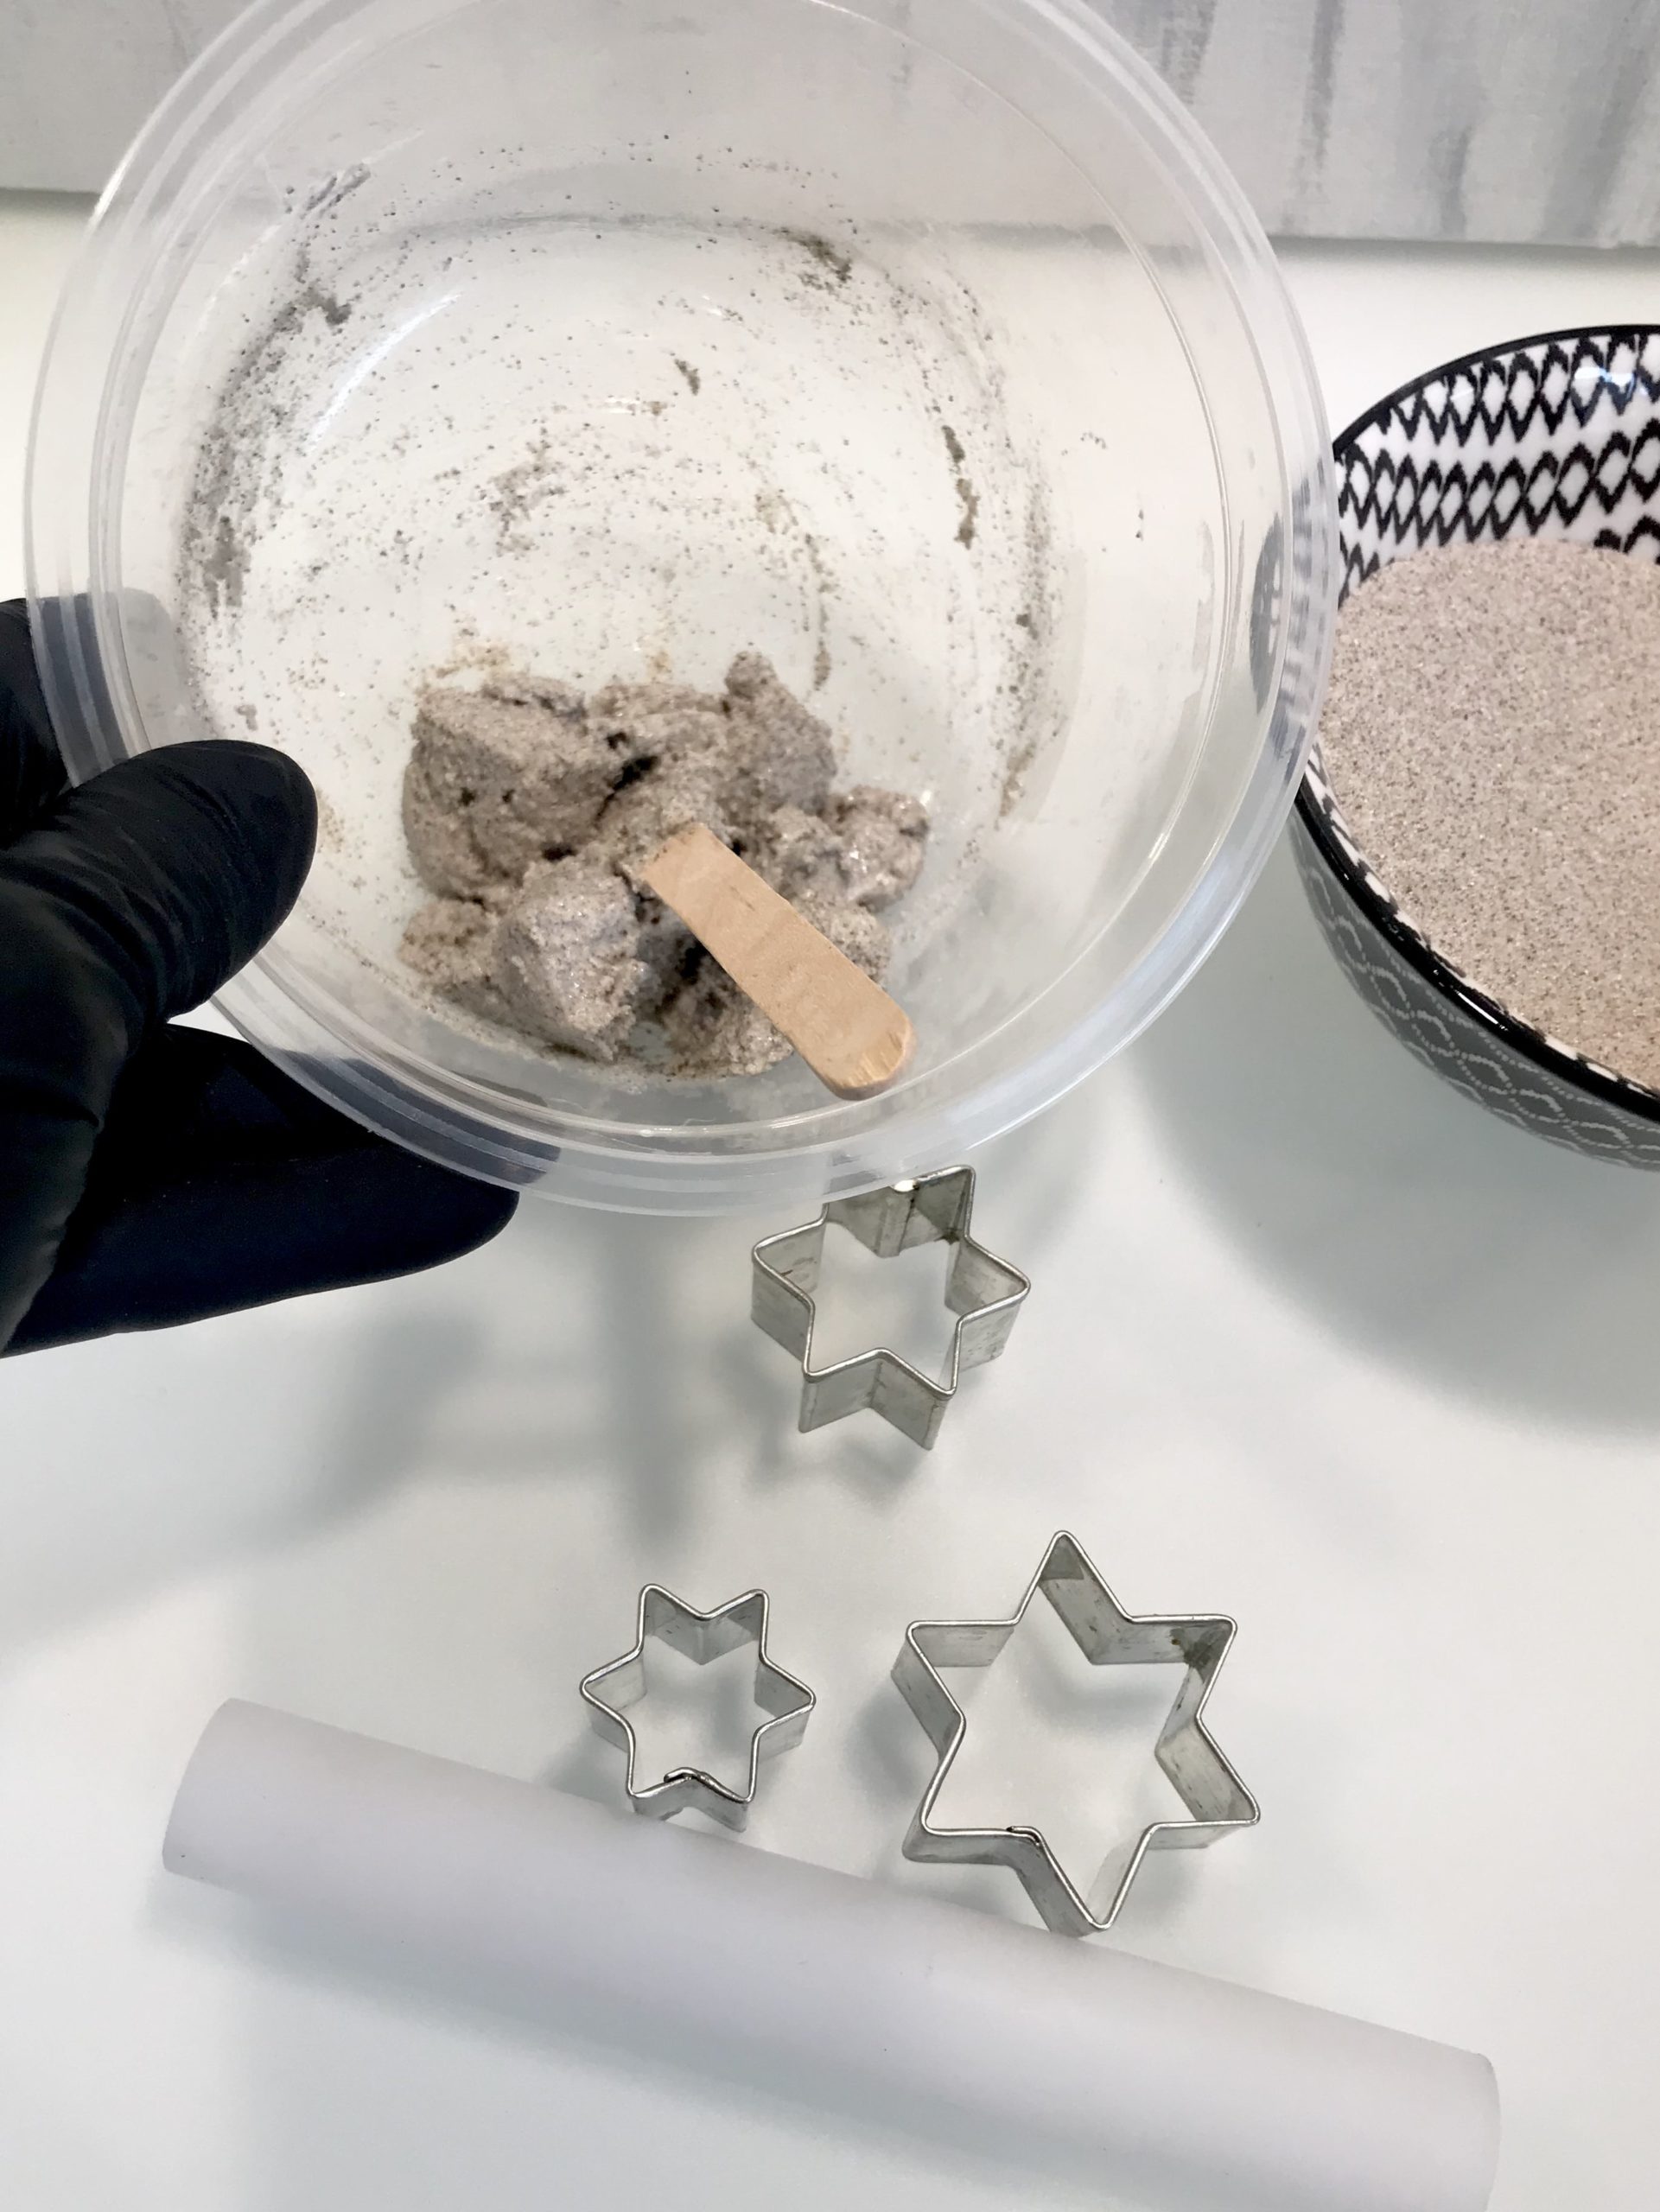 Modelliermasse aus Sand selber machen. Lufttrocknende Modelliermasse günstig herstellen. Geniale DIY Idee und einfaches Rezept. #chalet8, #modelliermasse